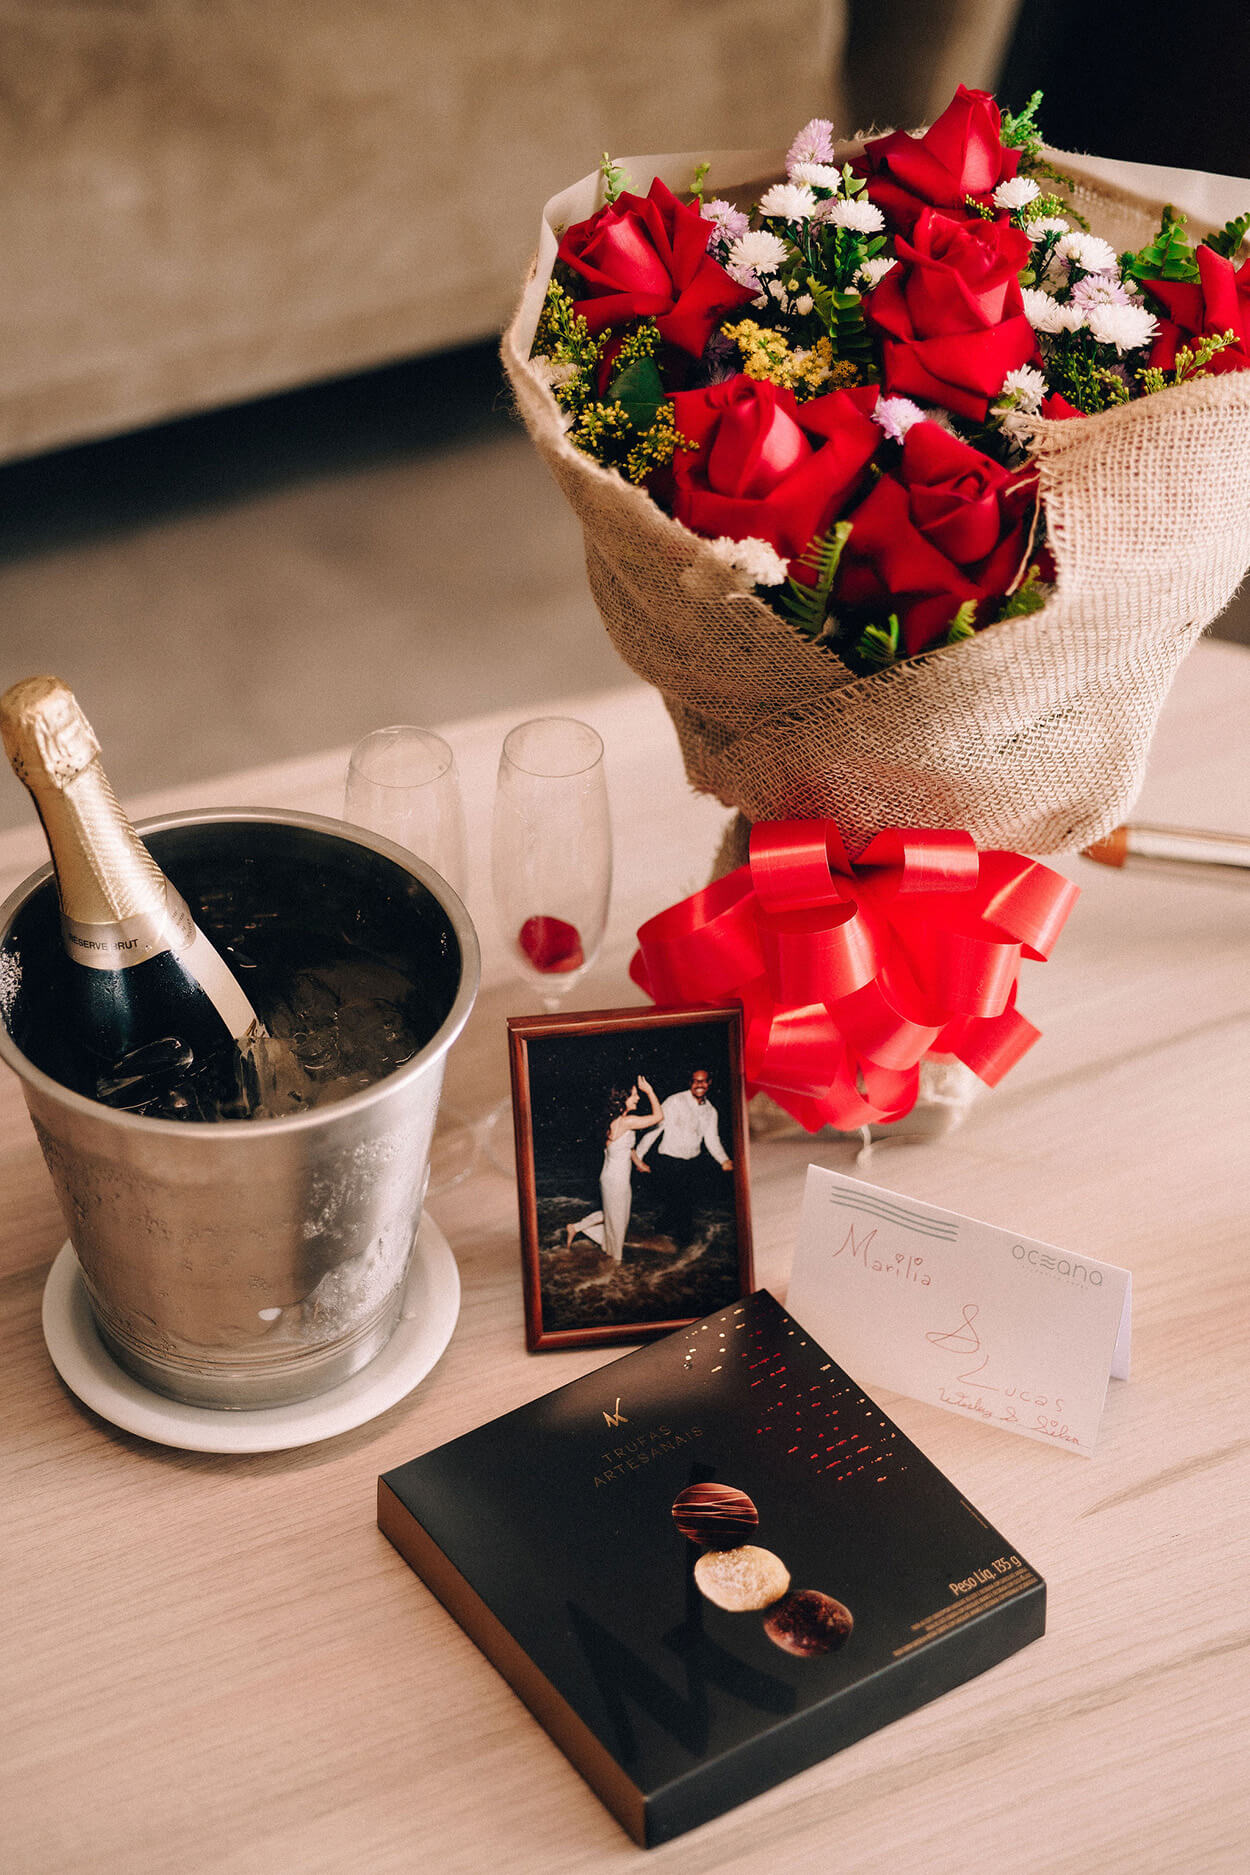 Balde com bebida no gelo porta retrao com foto do casal caixa de chocolate e buque com rosas vermelhas em cima da mesa